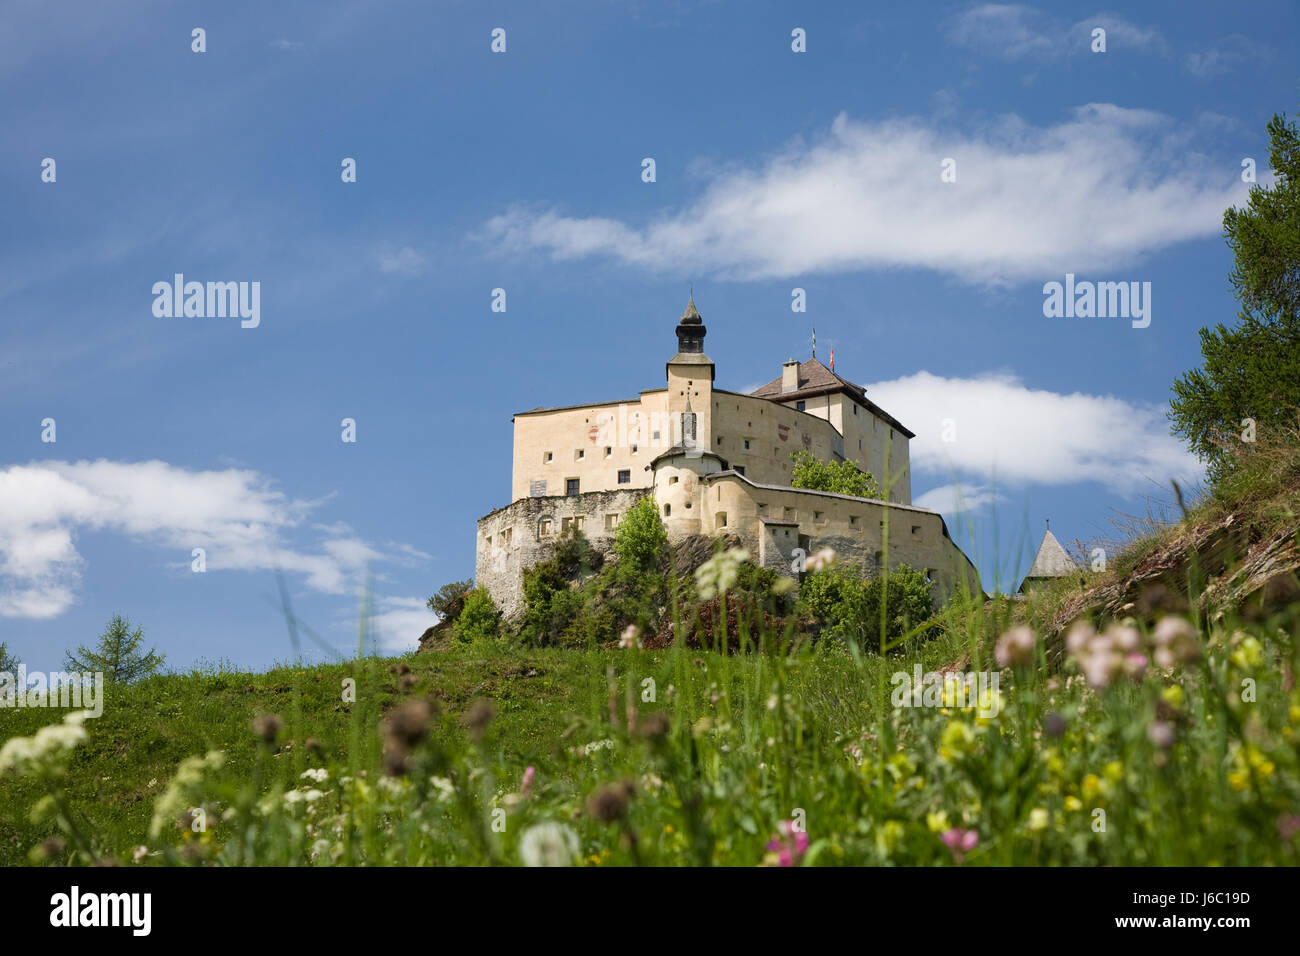 La Svizzera grigioni firmamento cielo erba di prato verde erba chateau castello blu Foto Stock